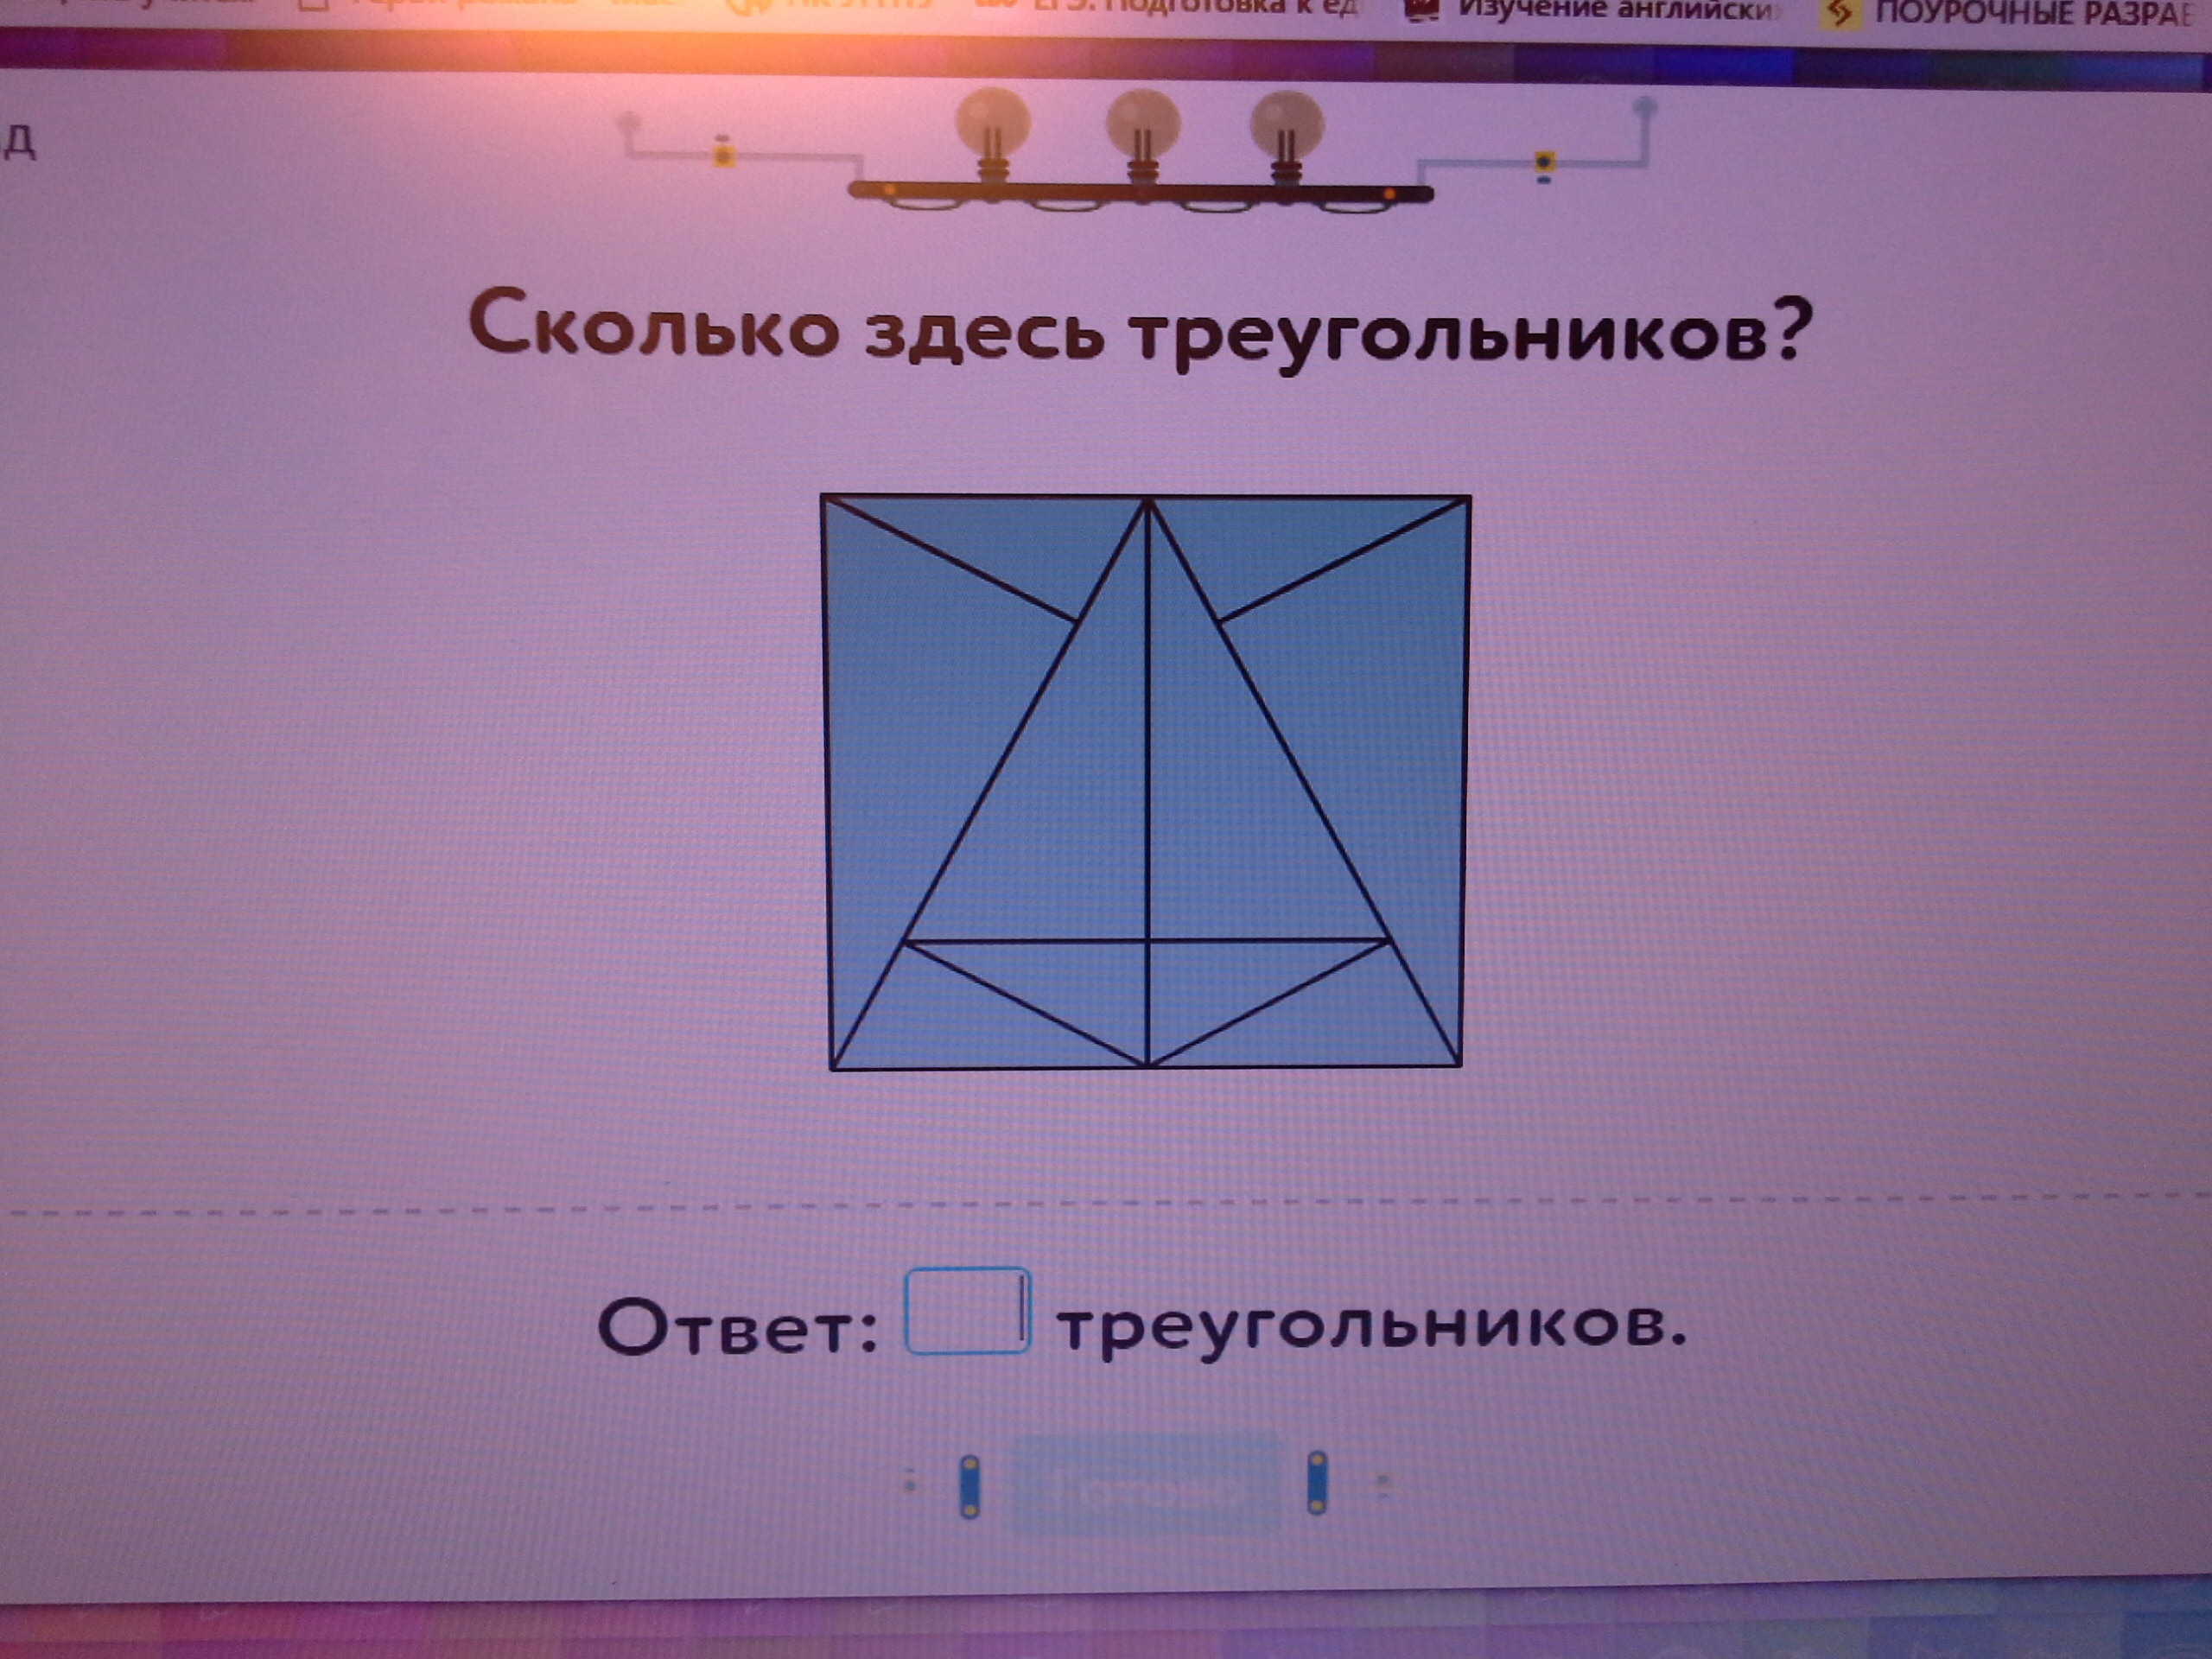 Сколько треугольника учи ру лаборатория. Сколькотздесь треугольников. Сколько здесь треугольников. Сколько сдель треугольников. Олько сдесь треугольников.